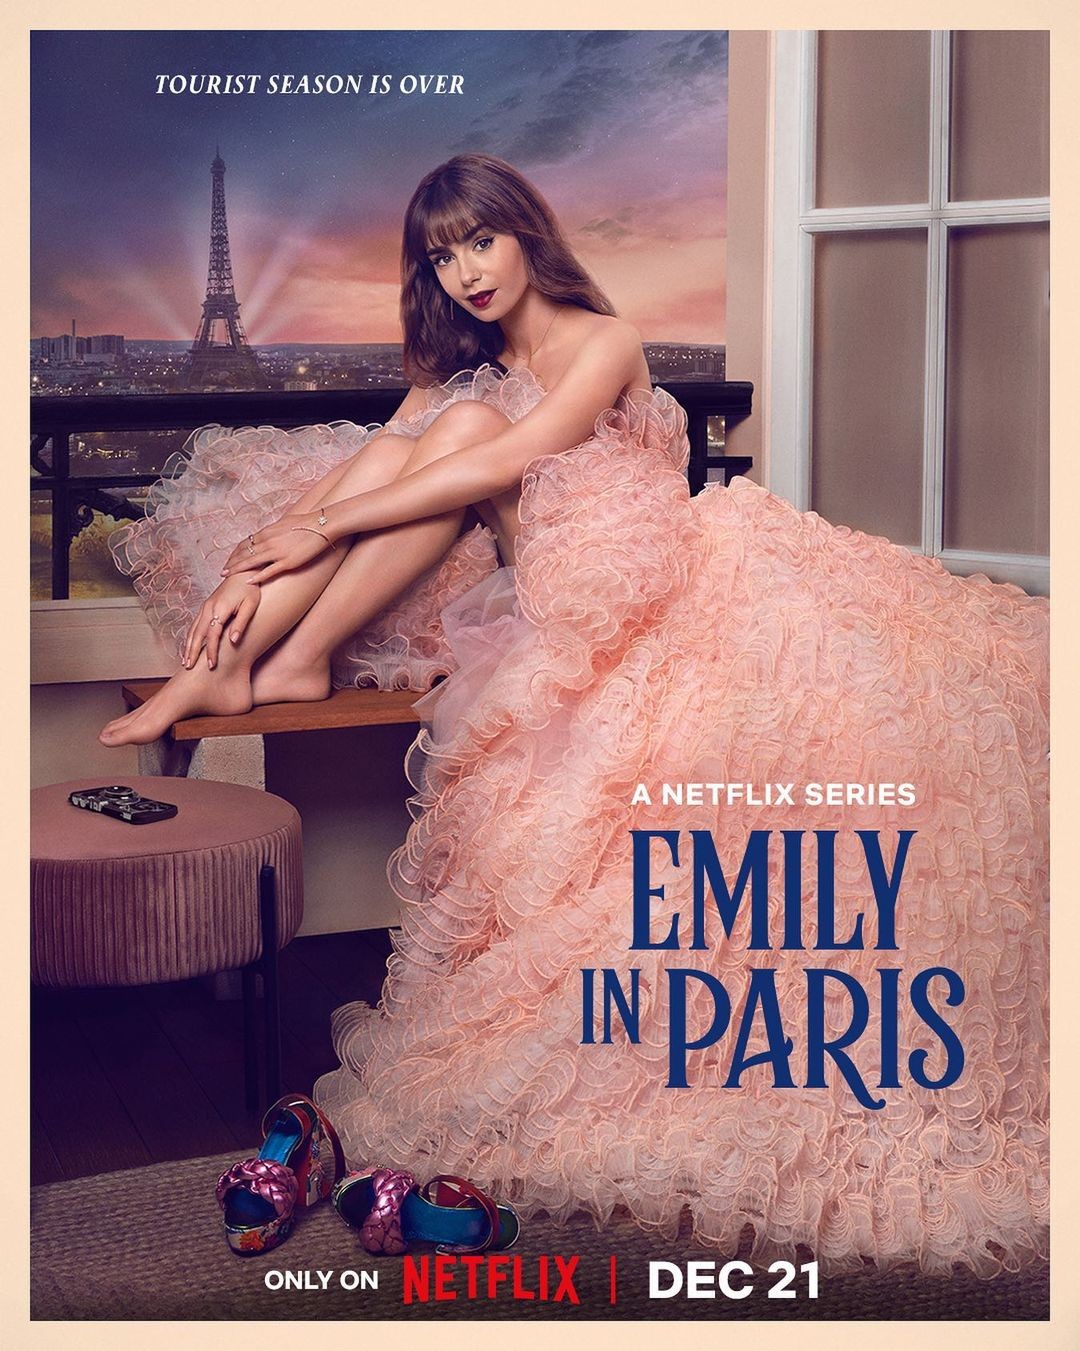 EMILY IN PARIS SEASON 3 BAGS PART 1